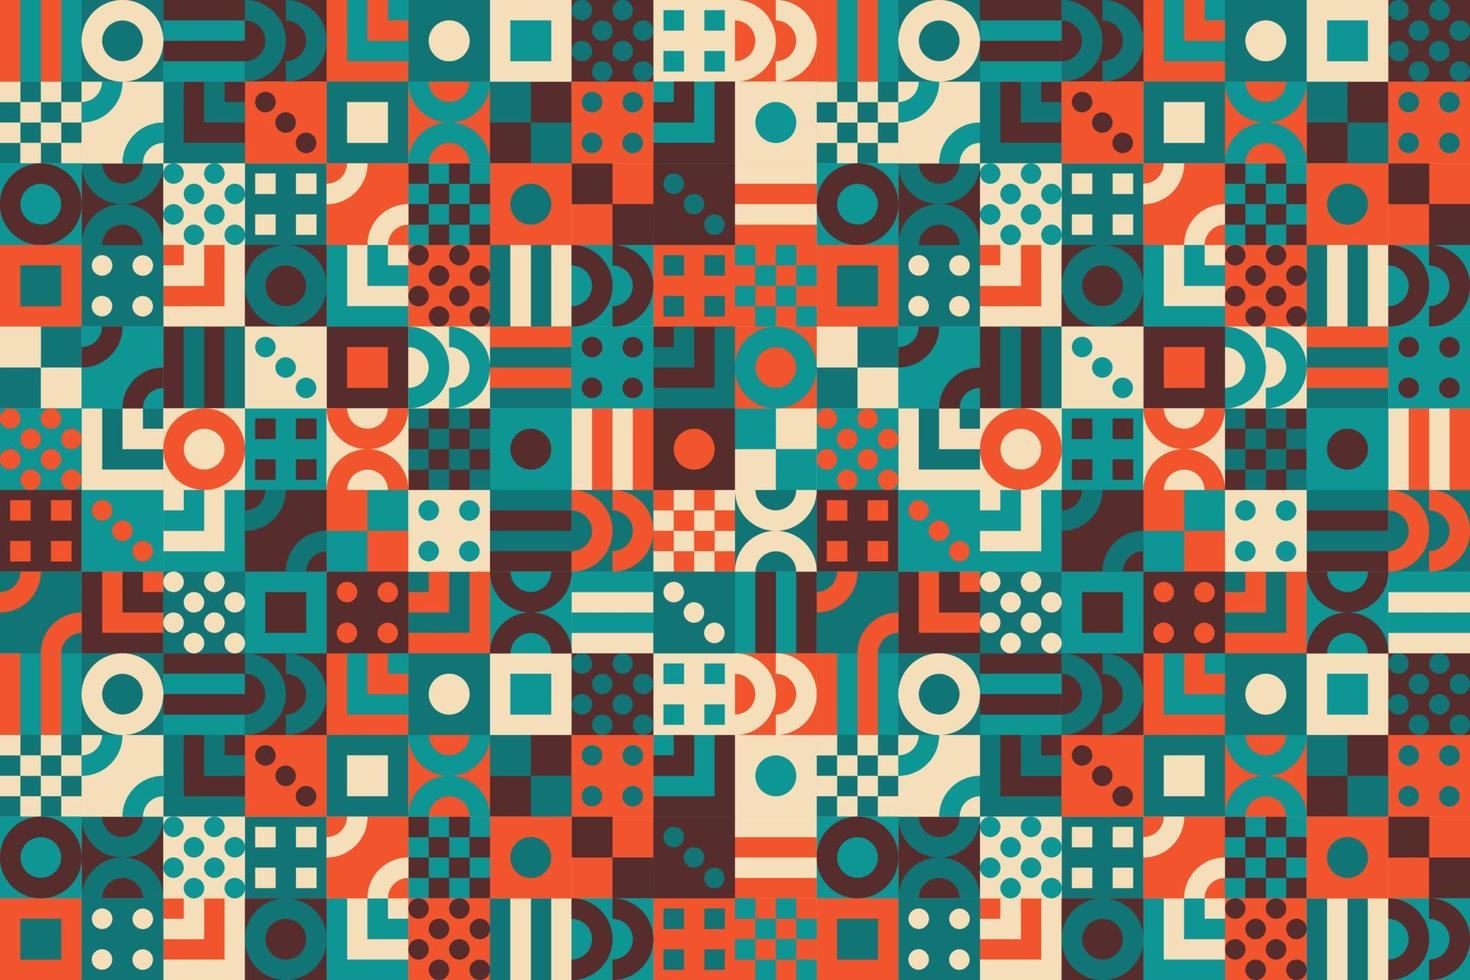 fundo de padrão de mosaico de forma geométrica colorida vetor